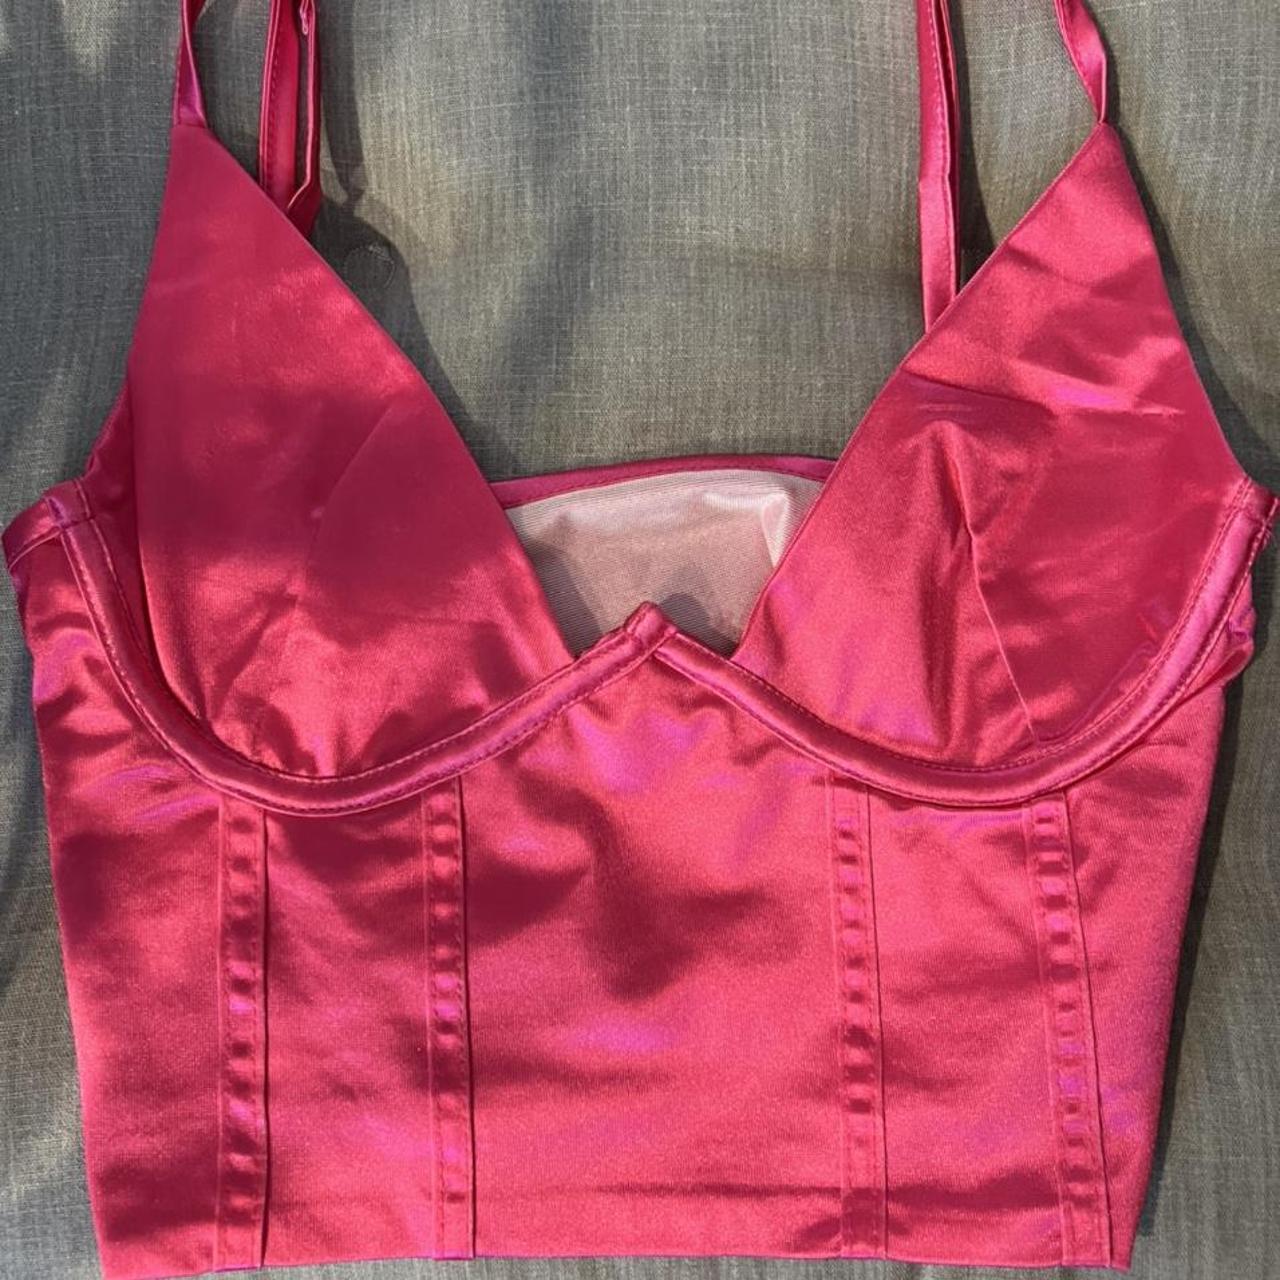 Adidas pink silk corset top Size 14 #adidas #corset - Depop